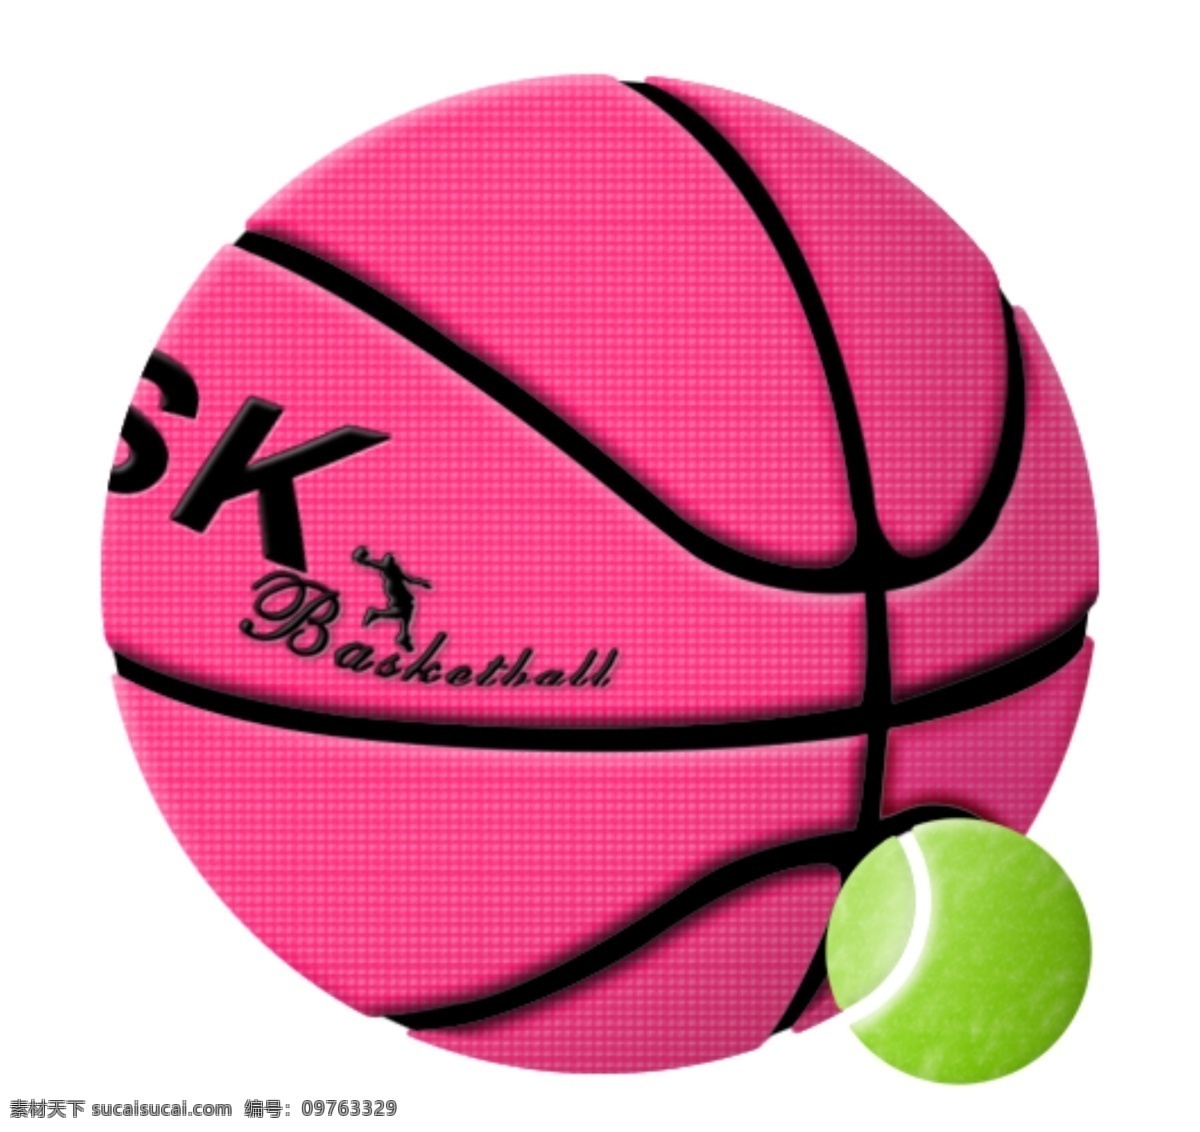 鼠 绘 真实 质感 篮球 网球 鼠绘 真实篮球 真实网球 超质感 psd格式 白色